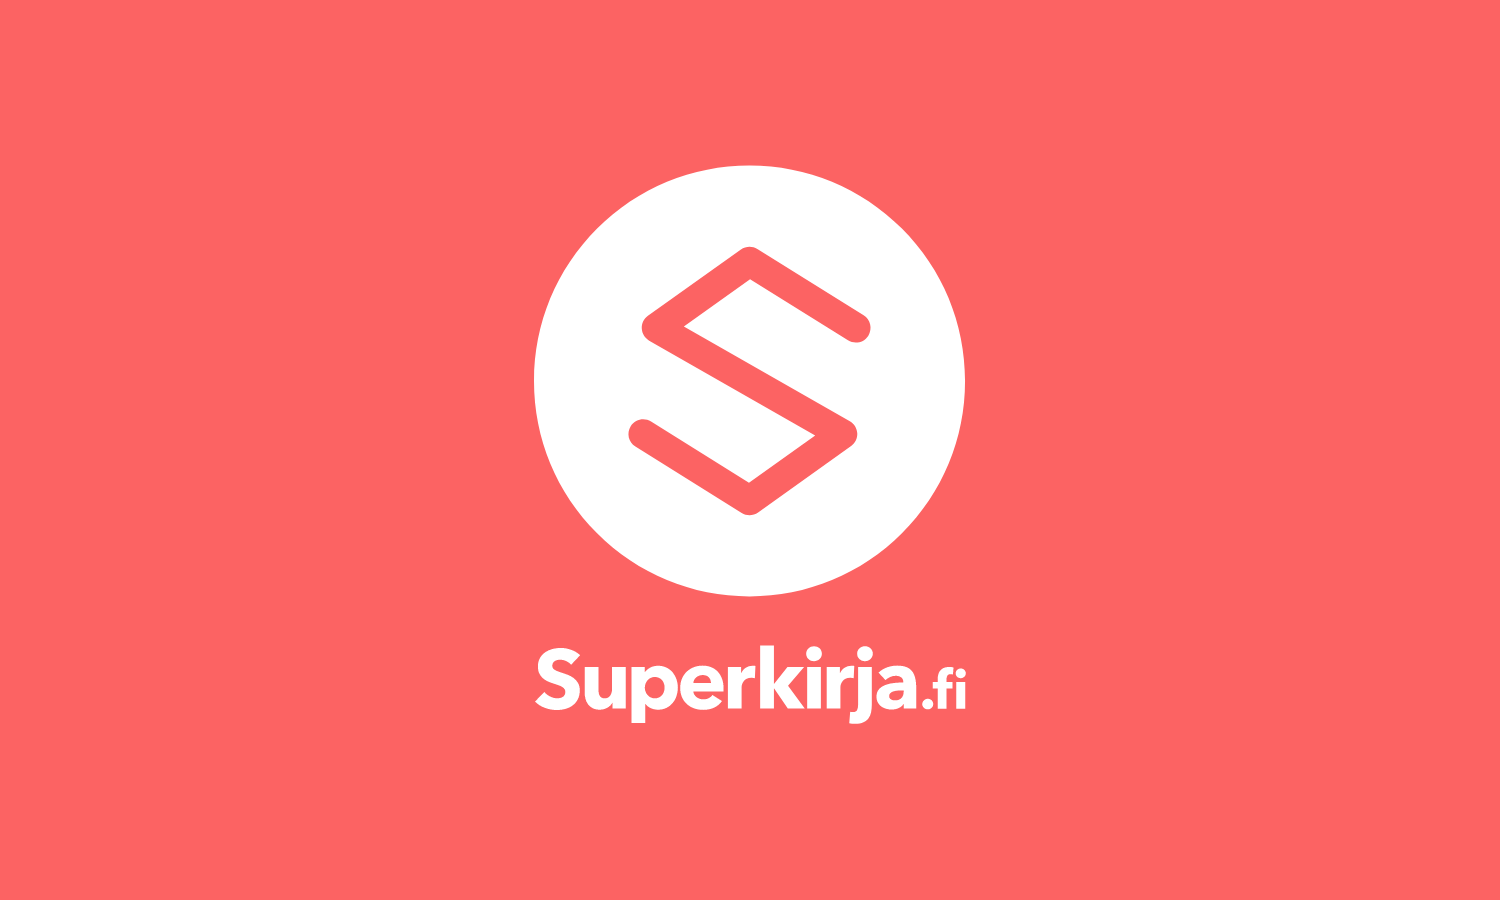 www.superkirja.fi